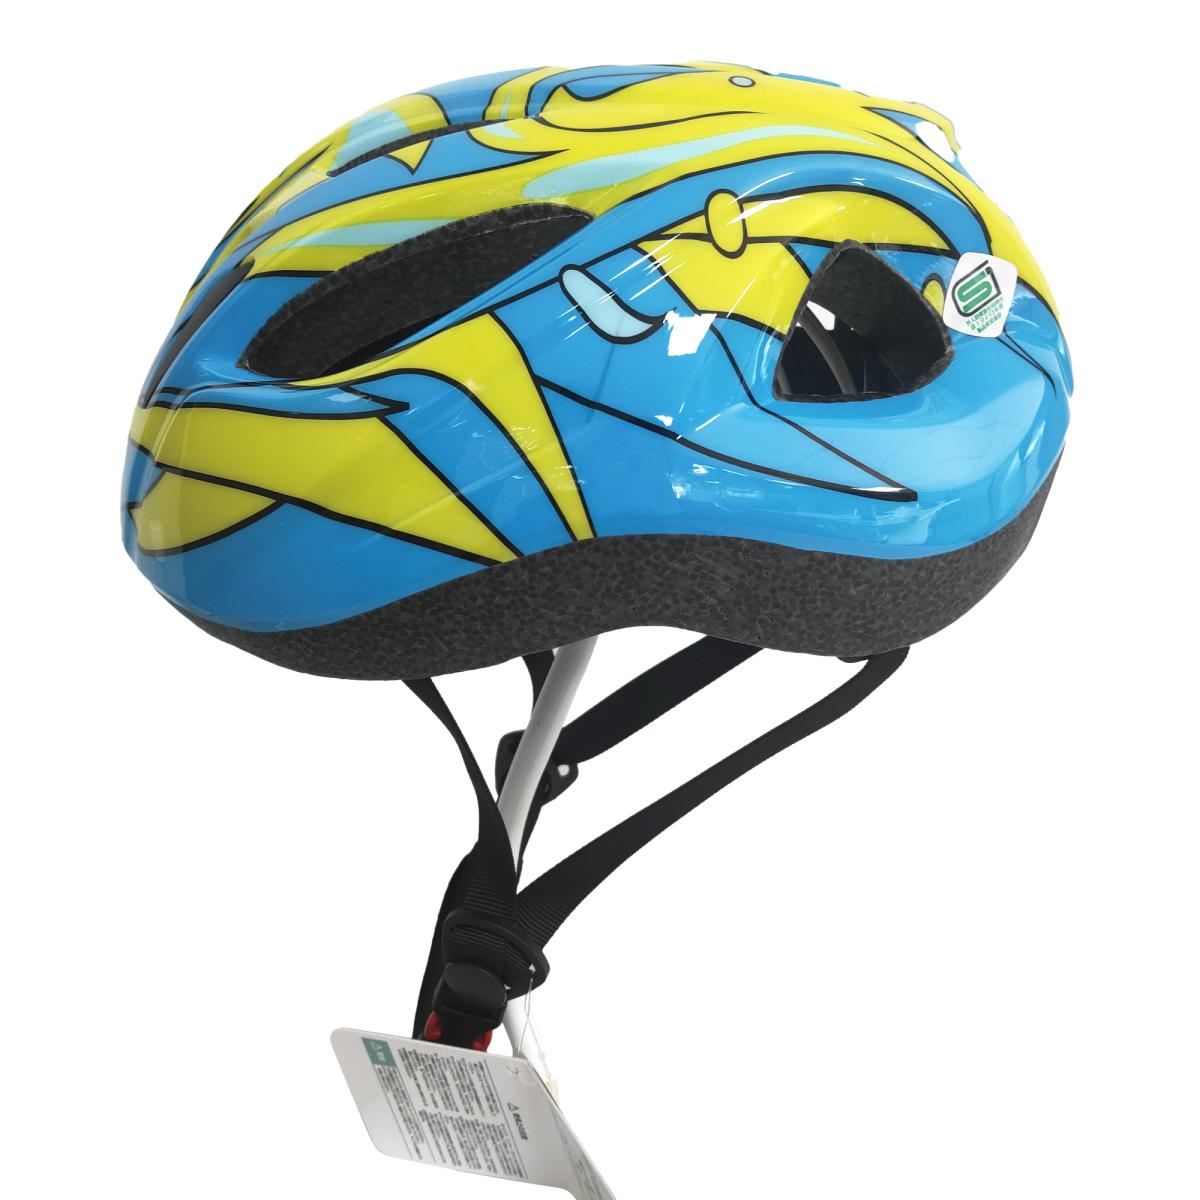 レブスポーツ 自転車用インモールドヘルメット 子供用 S/M イエロー/ブルー